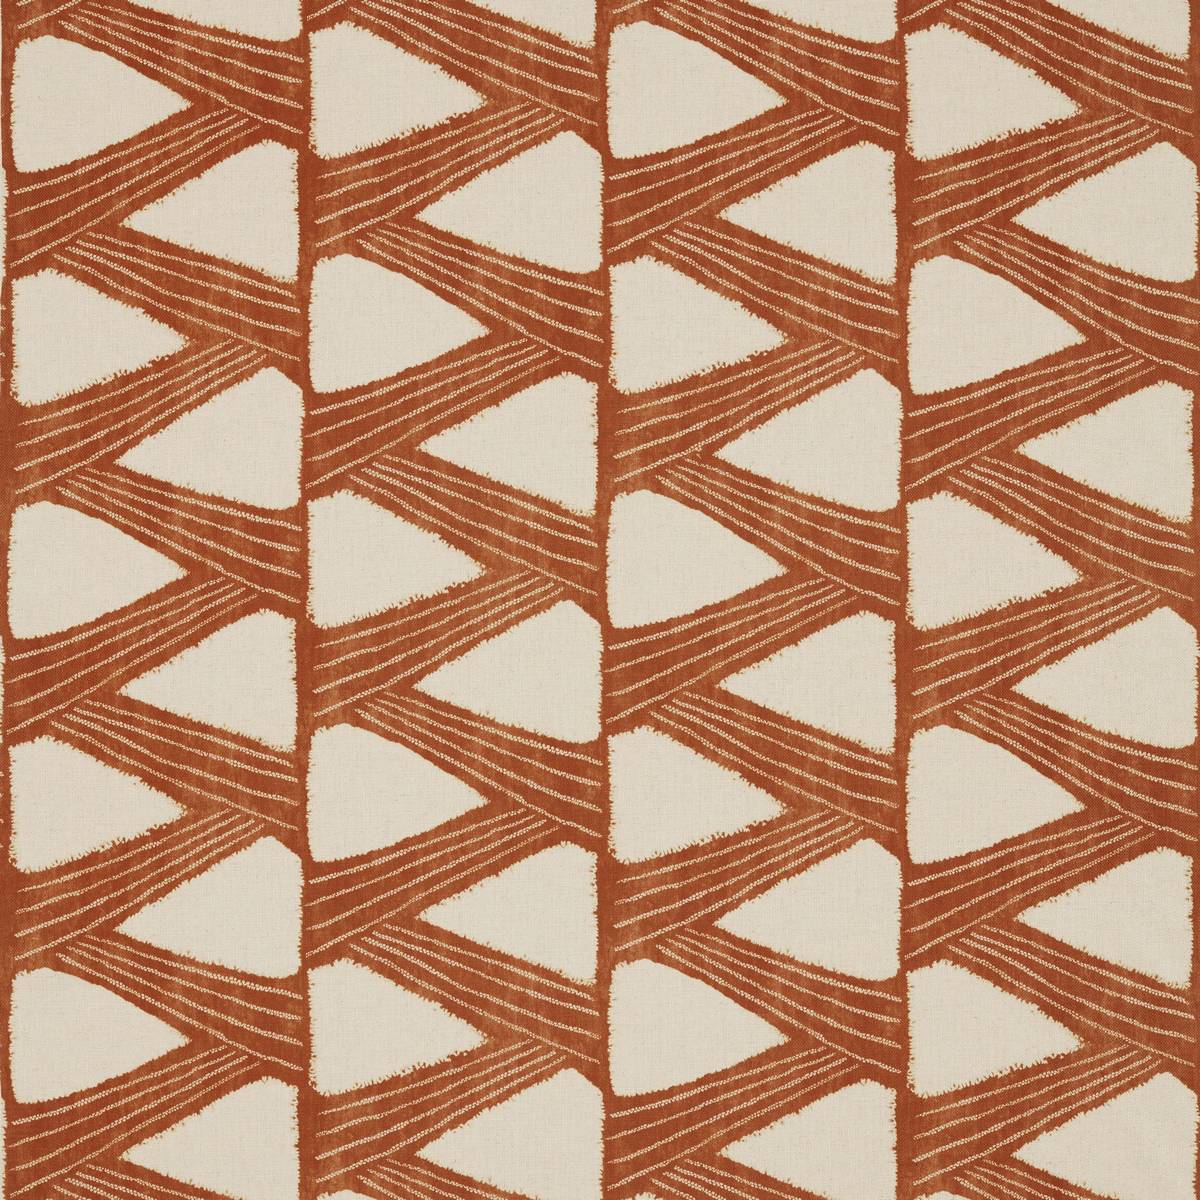 Kanoko Copper Fabric by Zoffany